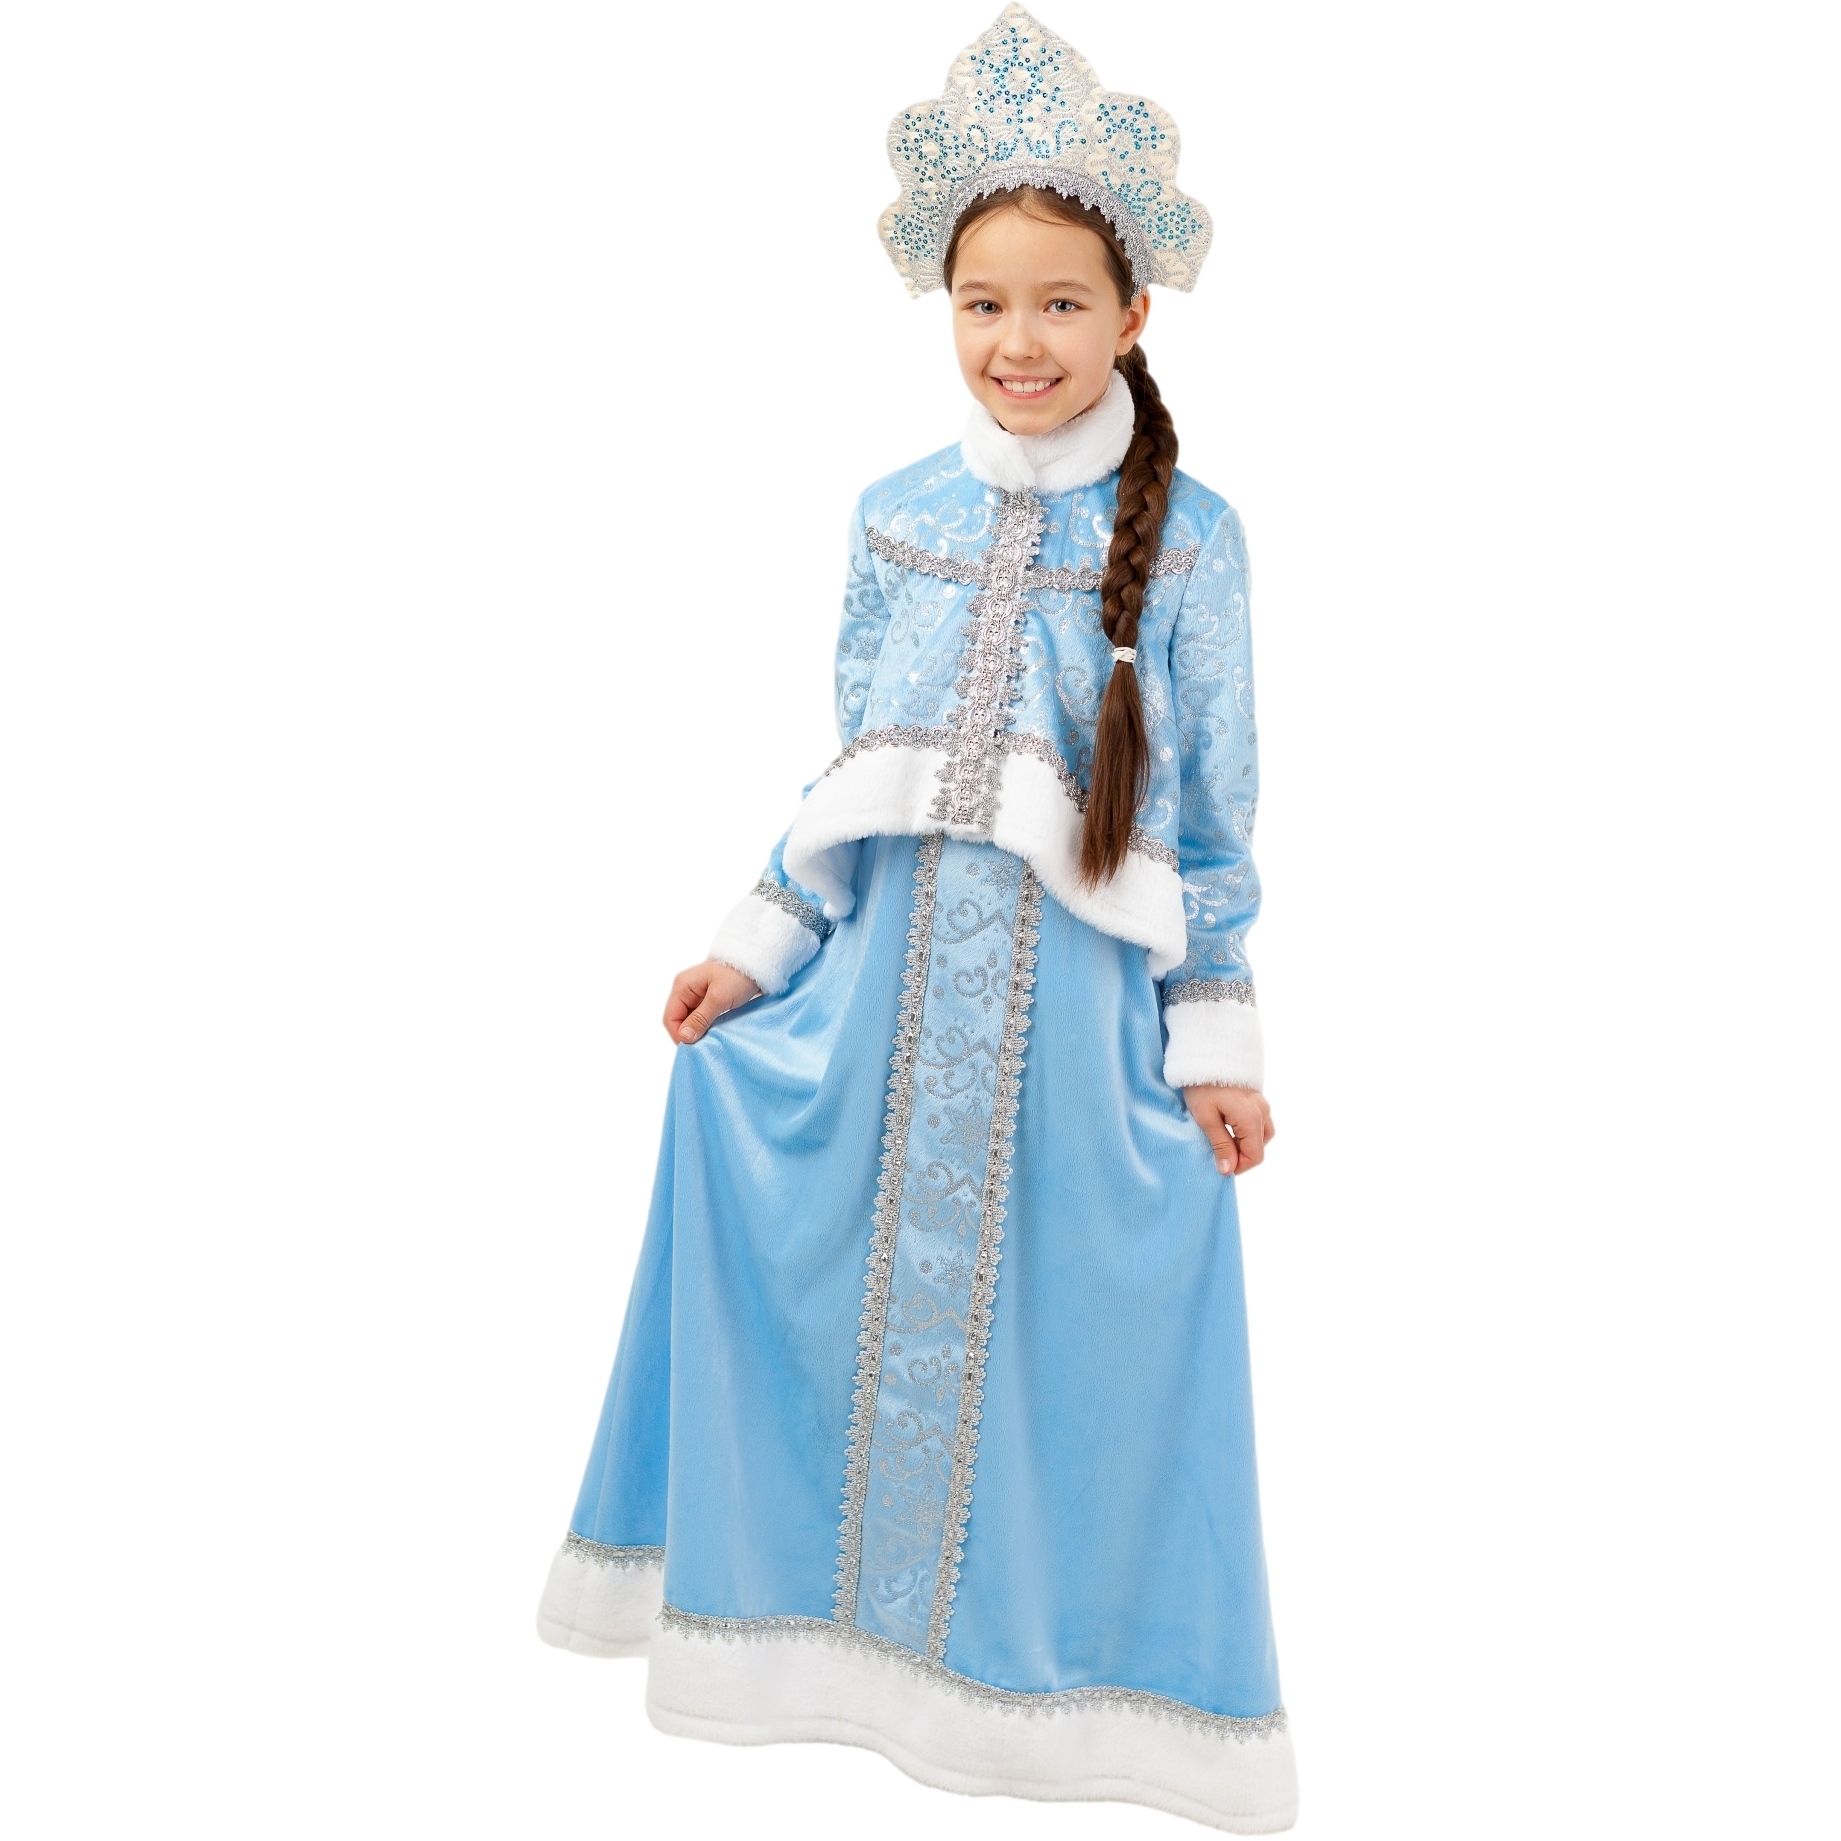 Карнавальный костюм "Снегурочка Танюшка" (жакет, сарафан, кокошник) размер 128-64